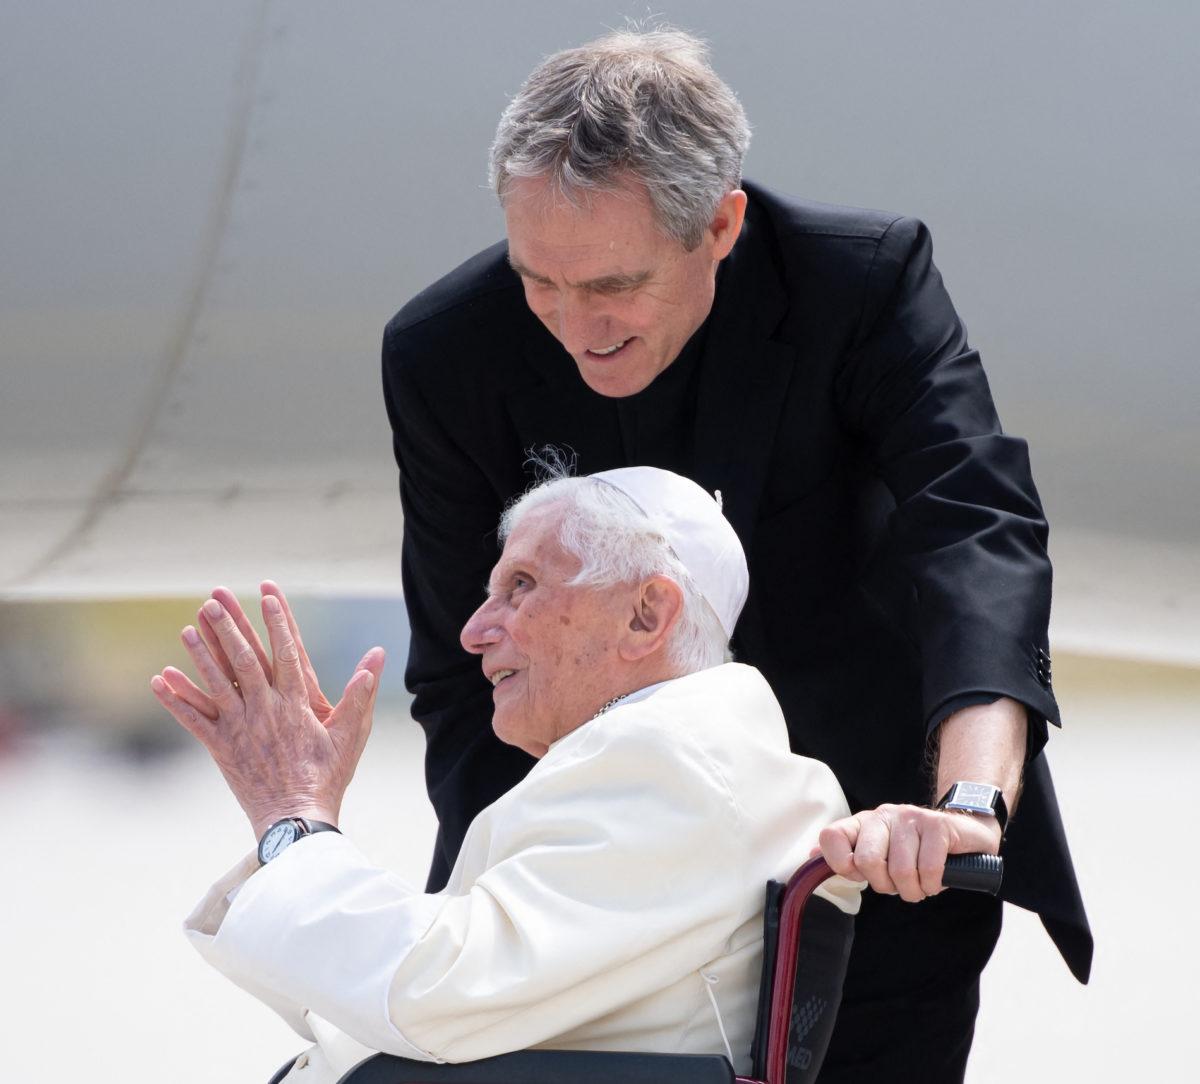 Benedicto XVI pide “perdón” a las víctimas de abusos pero niega haber encubierto a sacerdotes